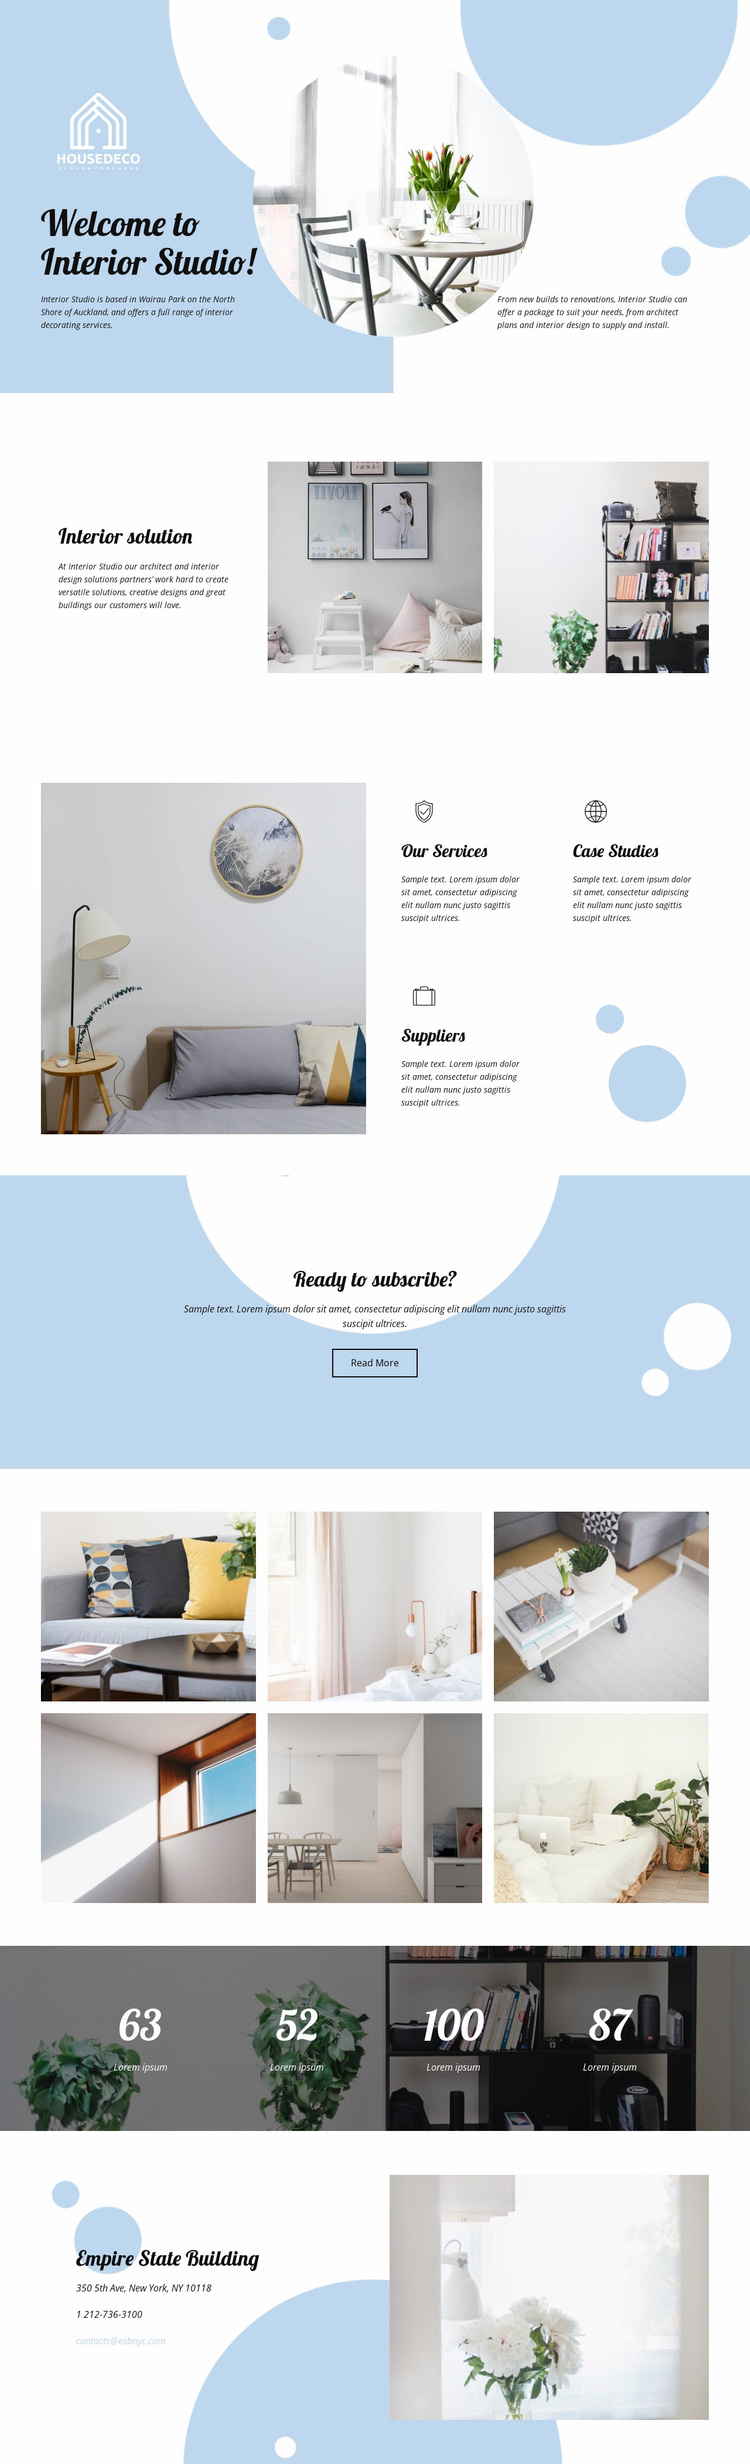 Interior Studio Website Design